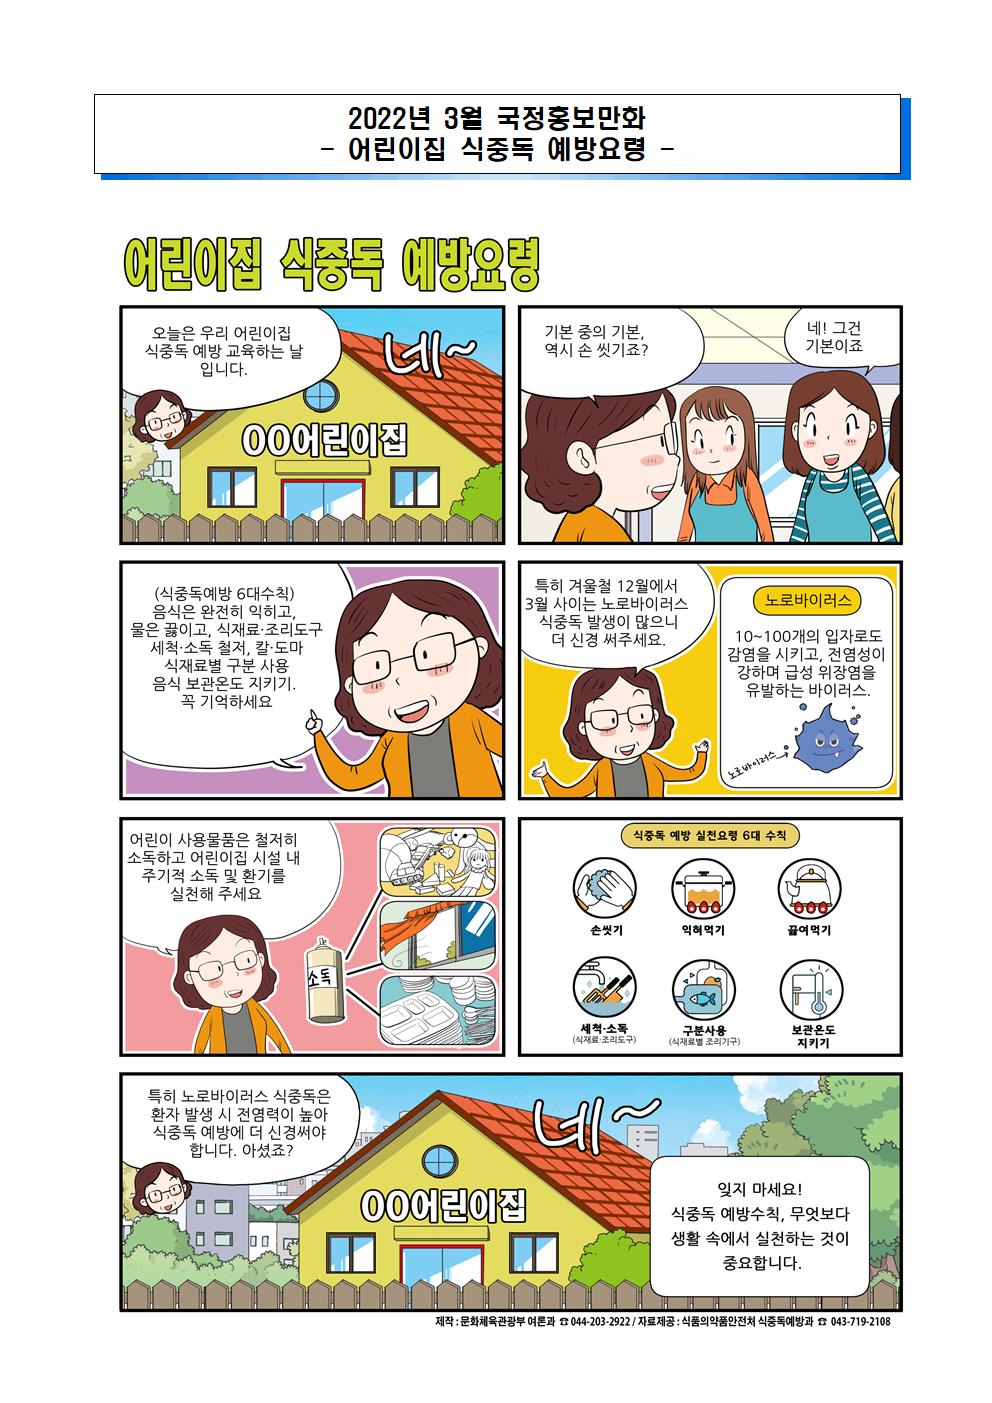 3월 국정홍보만화(모바일 알뜰교통카드, 어린이집 식중독 예방요령)